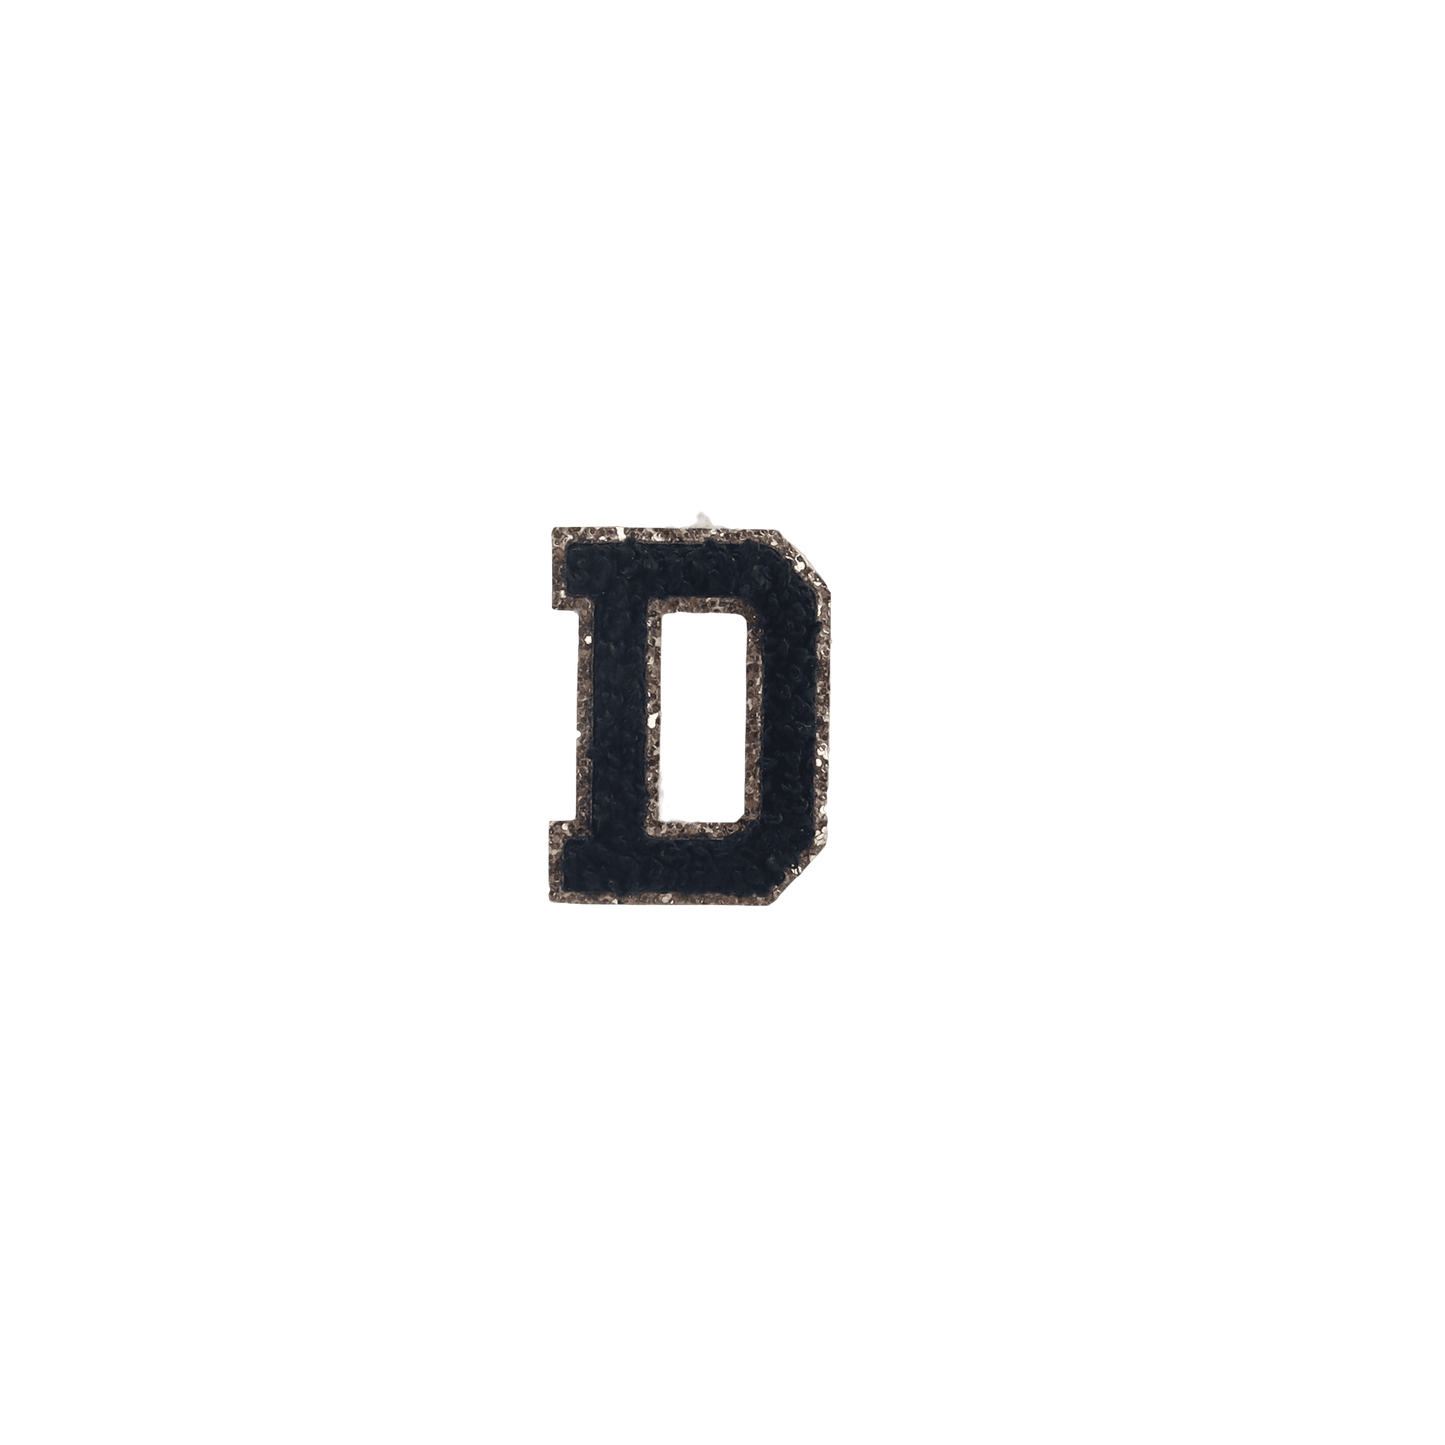 D Letter Patches